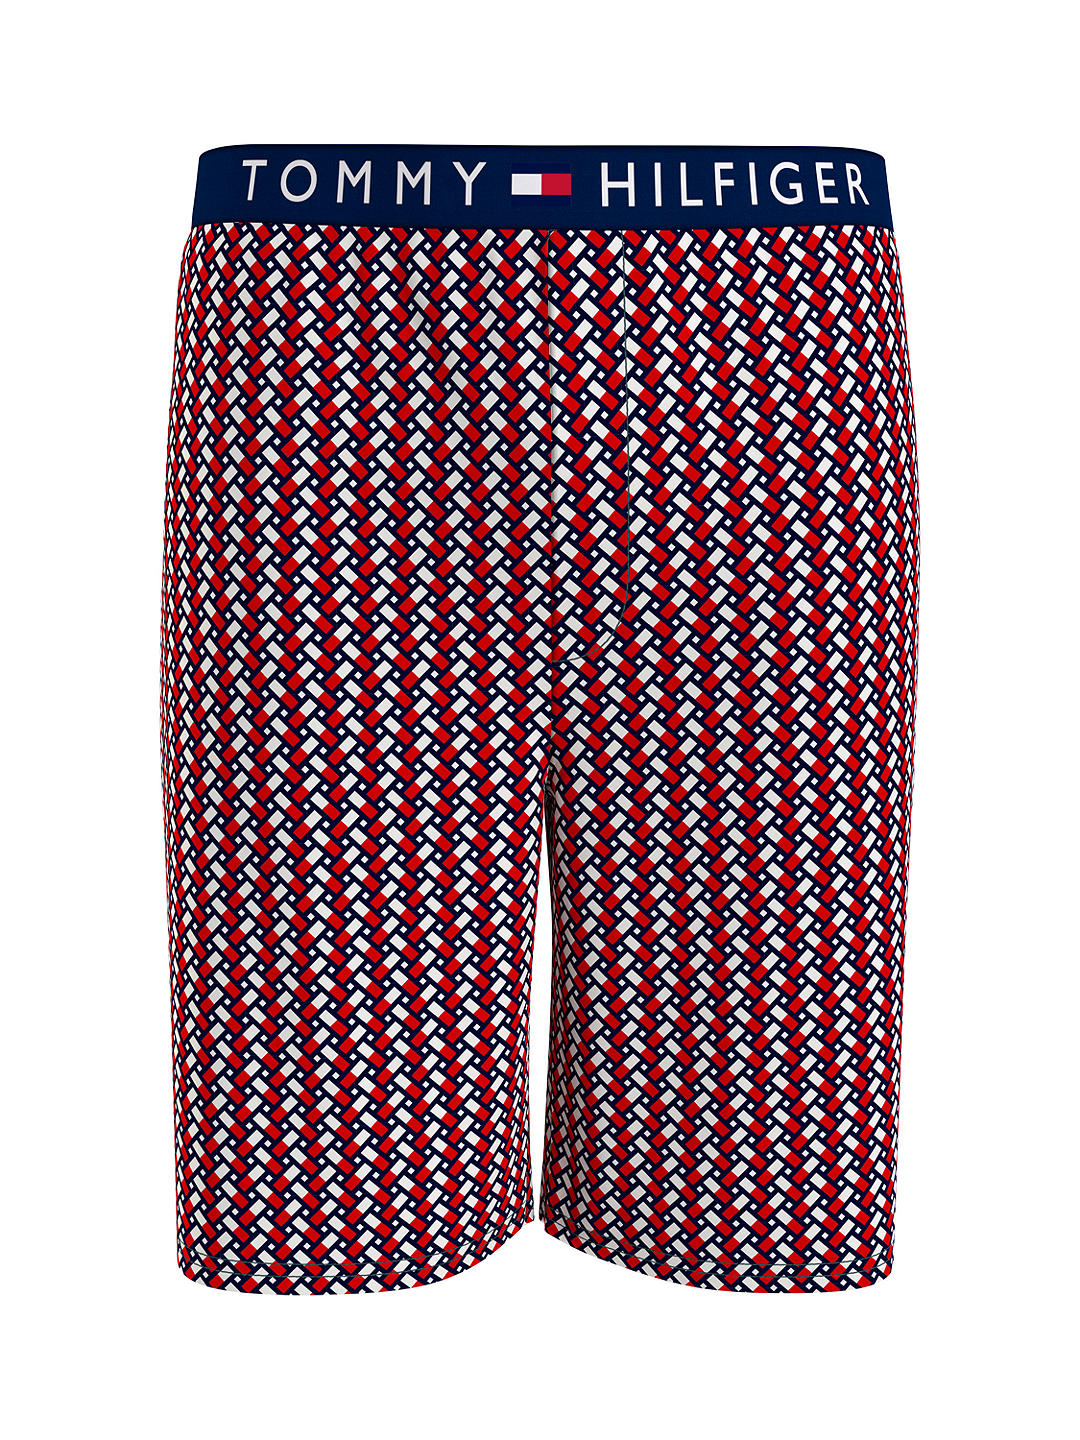 Tommy Hilfiger Logo Cotton Jersey Shorts, Coastal Navy/Multi